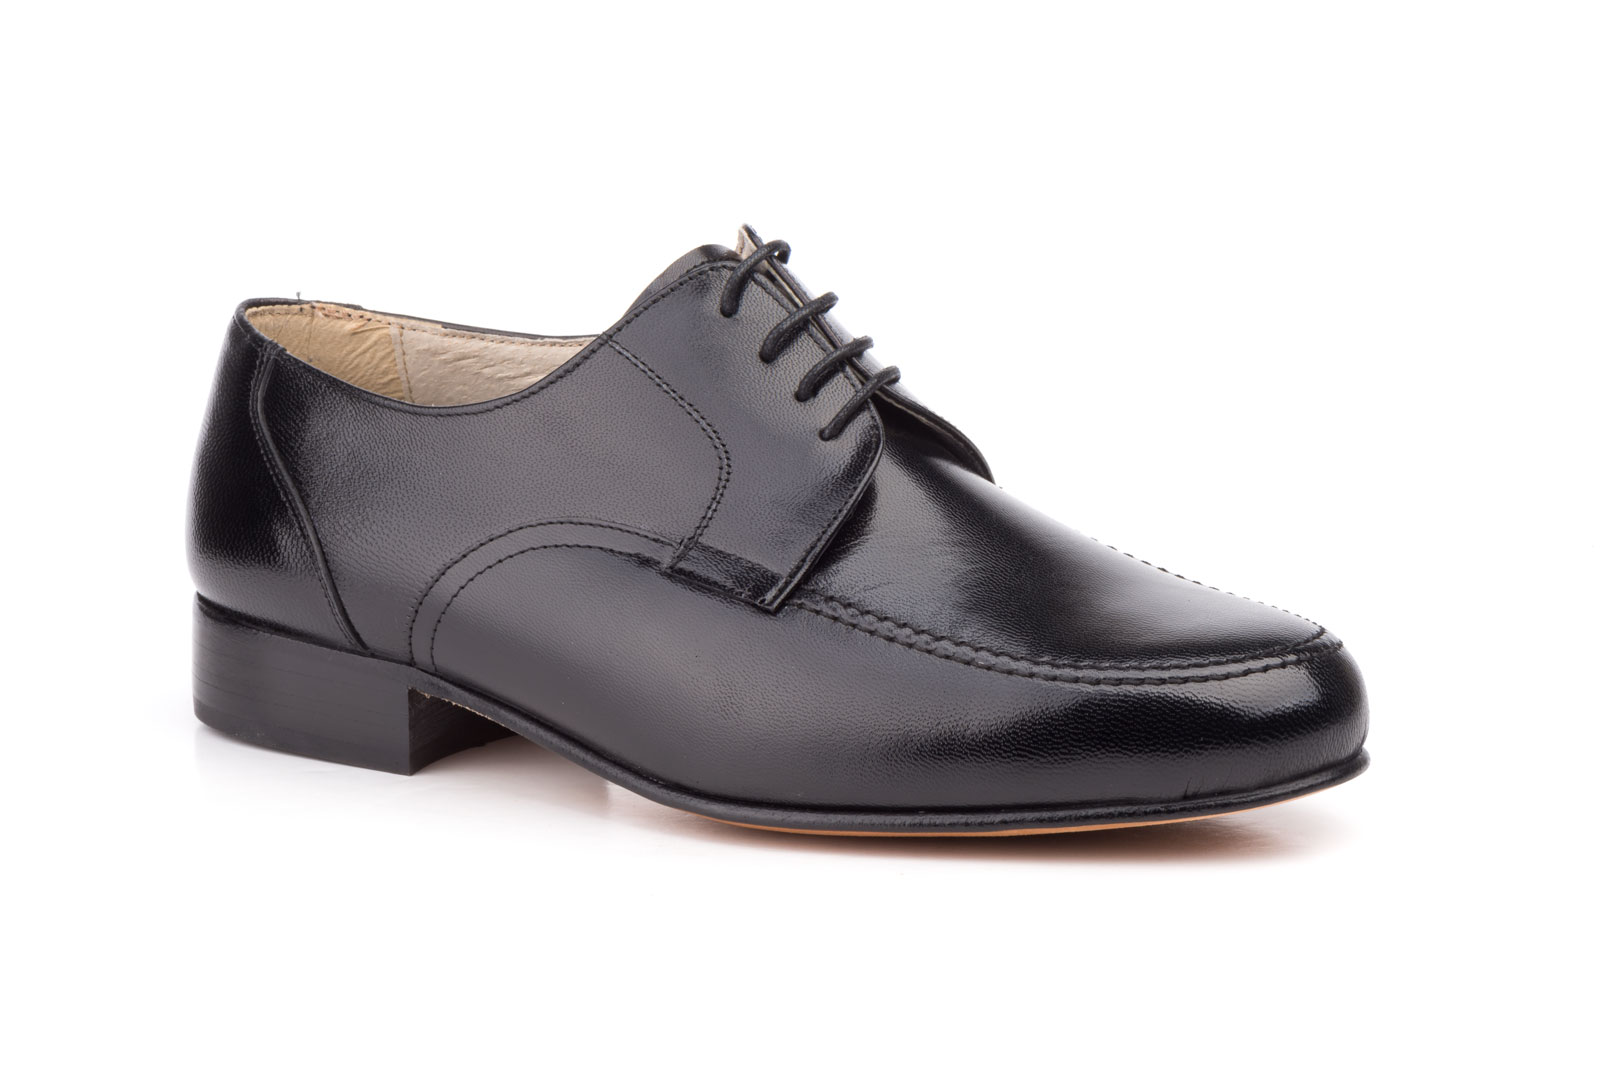 Zapatos Hombre Piel Negro Cordones Suela de Cuero  -  Ref. 1147 Negro